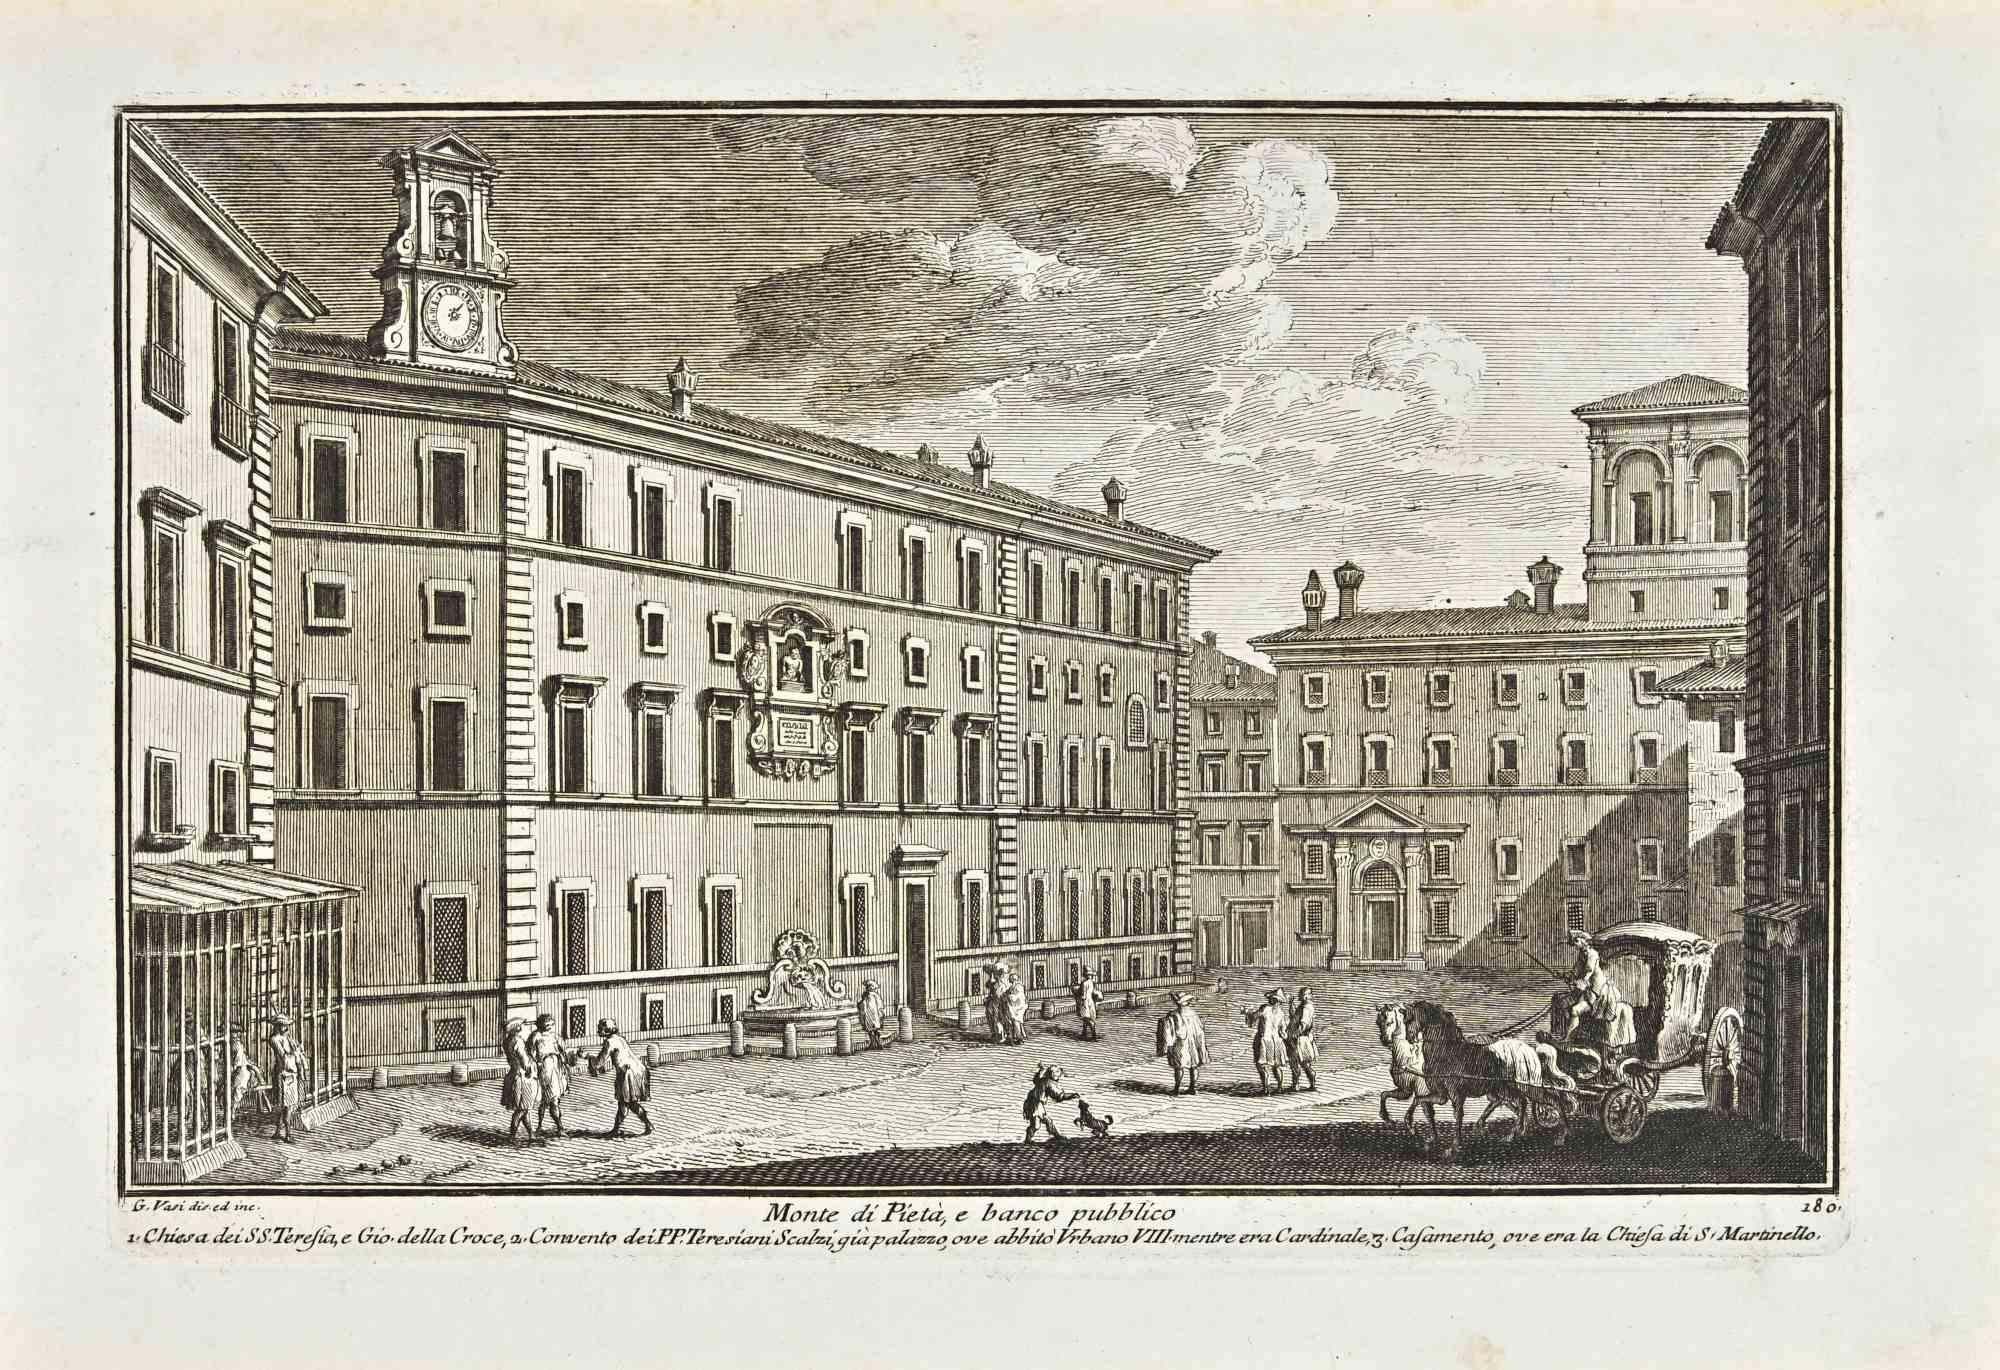 Monte di Pieta e banco Pubblico ist eine Originalradierung aus dem späten 18. Jahrhundert von Giuseppe Vasi.

Signiert und betitelt am unteren Rand der Platte. 

Gute Bedingungen.

Giuseppe Vasi  (Corleone, 1710 - Rom, 1782) war ein Graveur,